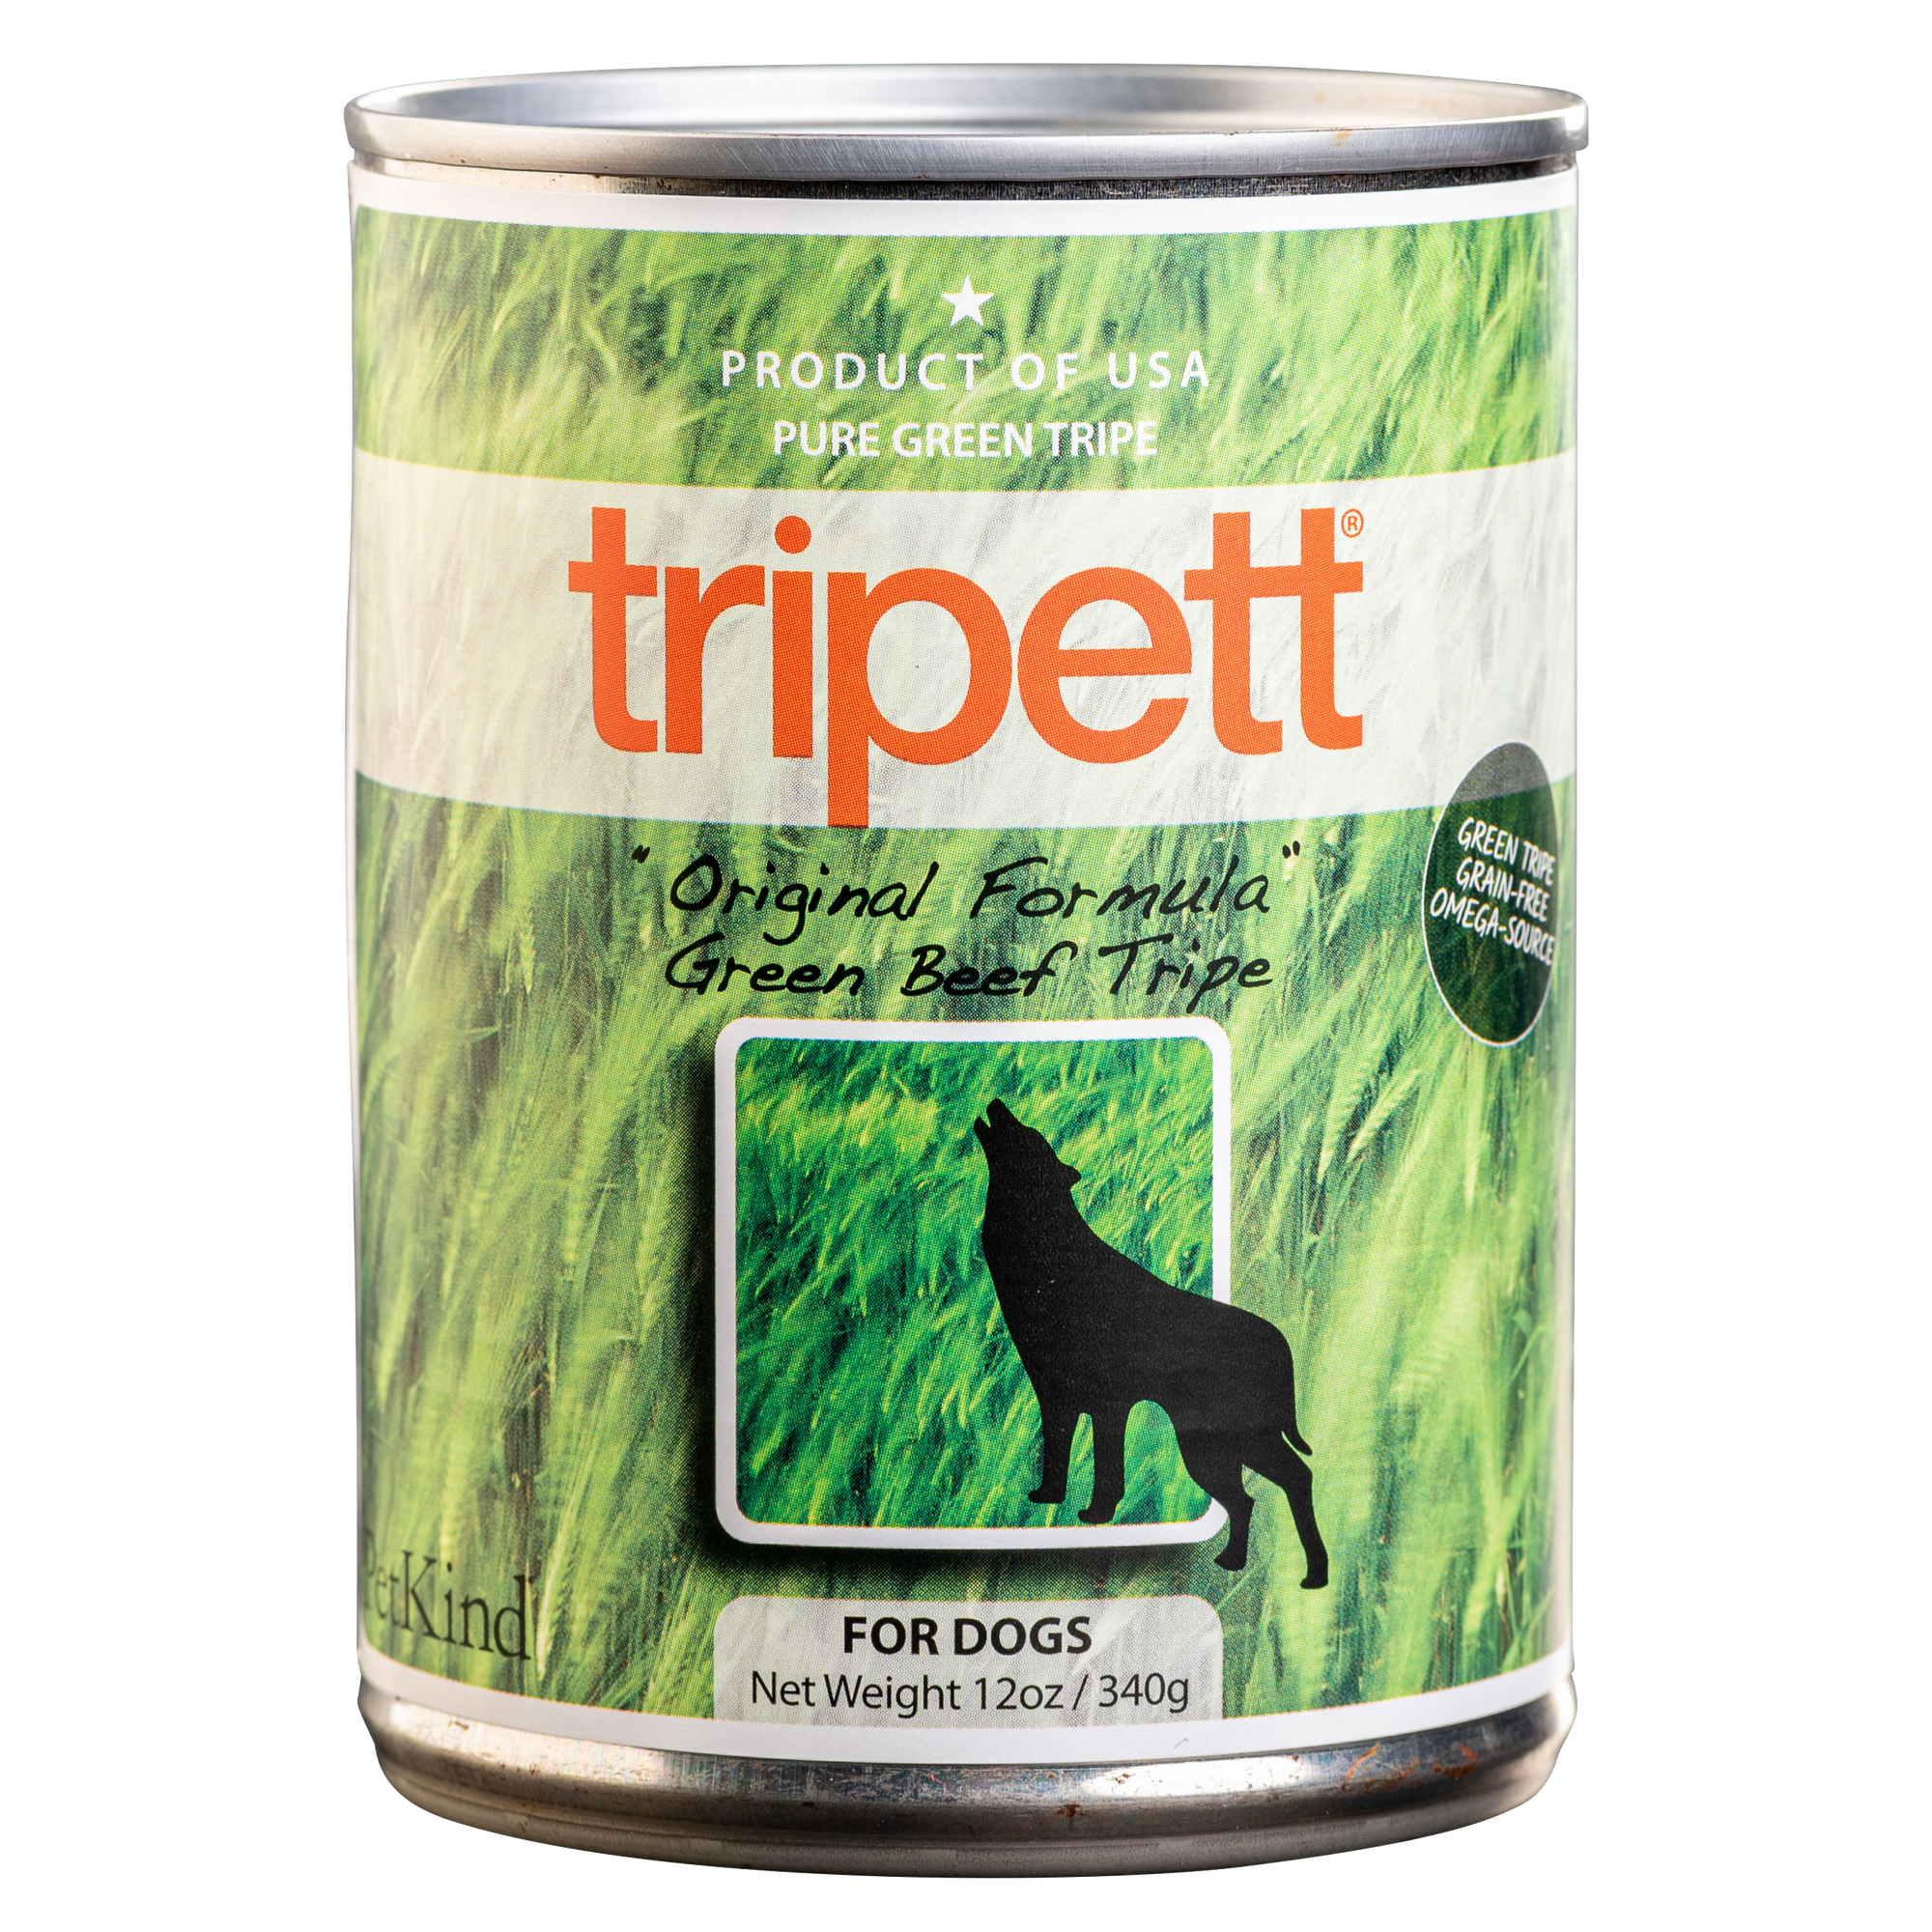 Tripett Original Formula Green Beef Tripe (12 oz)